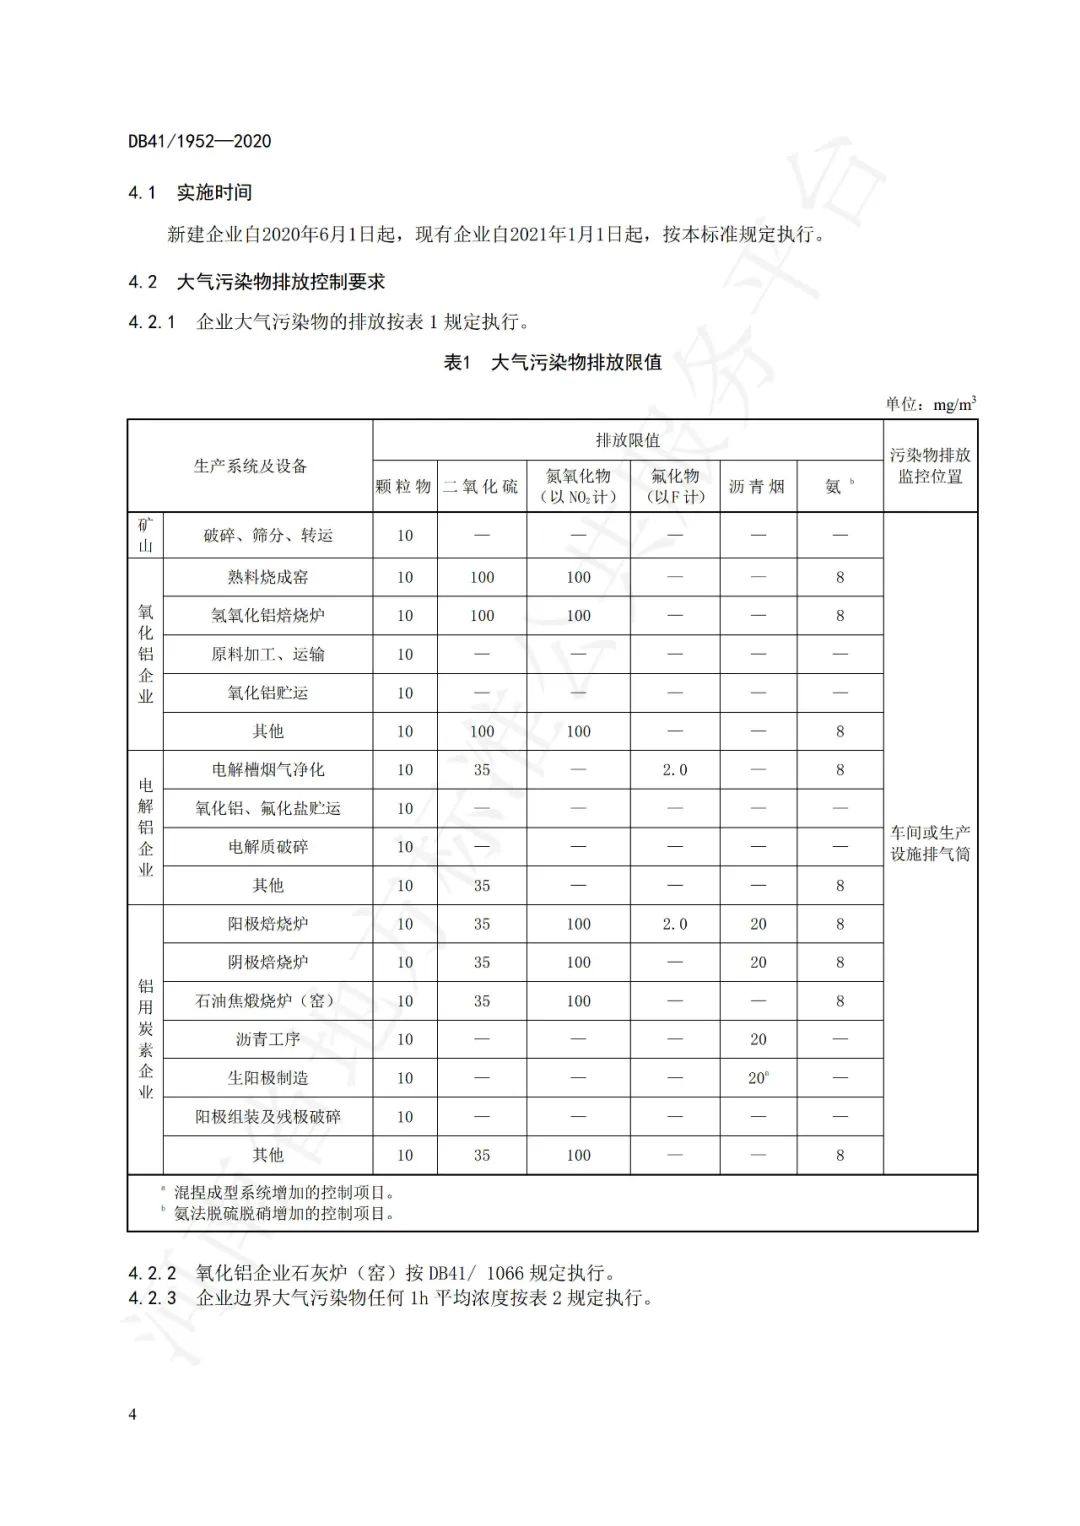 6月1日起河南省鋁工業污染物排放標準正式實施